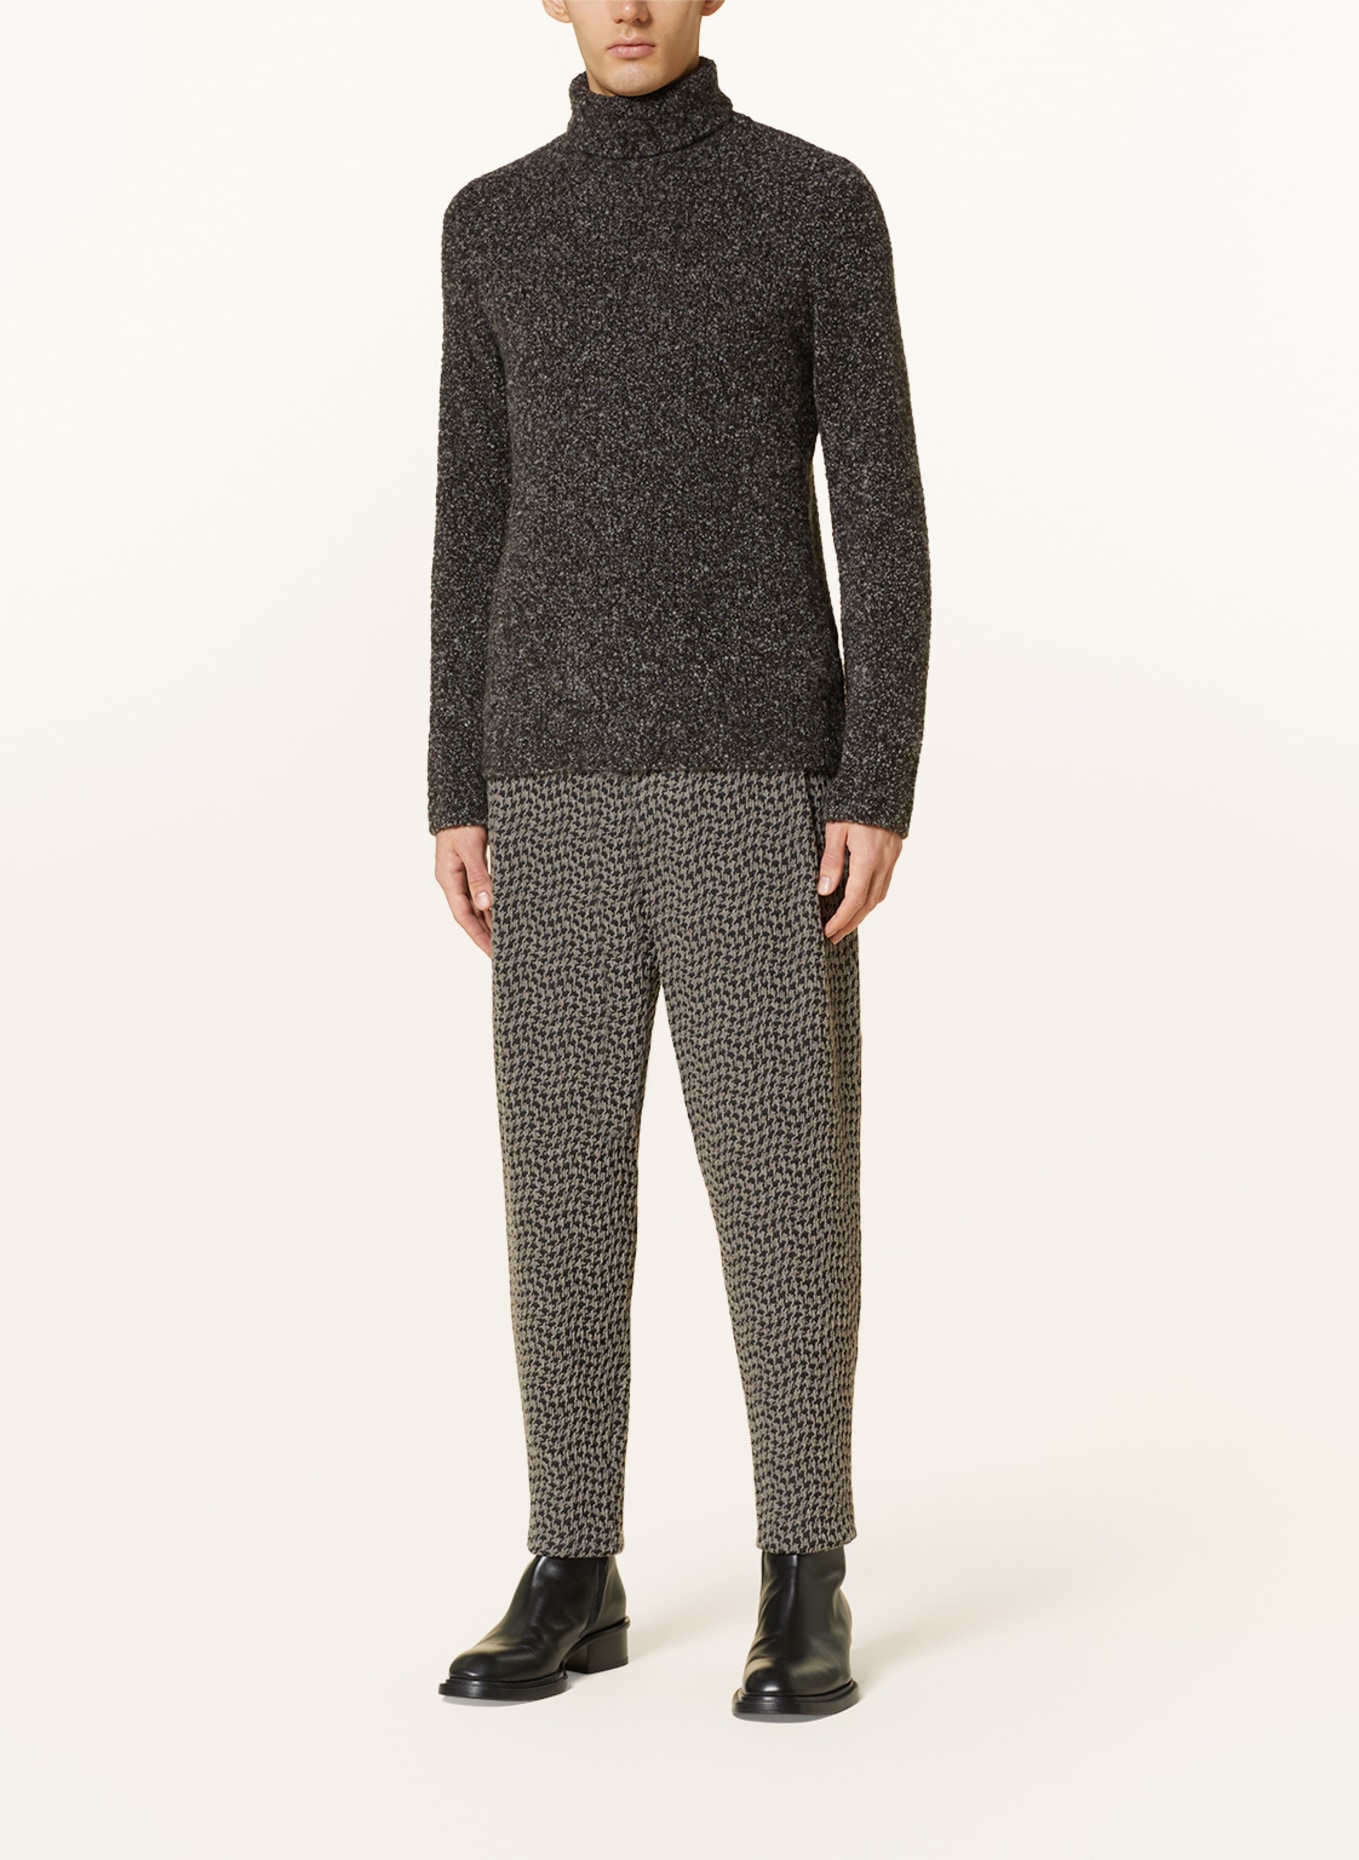 GIORGIO ARMANI Turtleneck sweater in cashmere, Color: BLACK/ WHITE (Image 2)